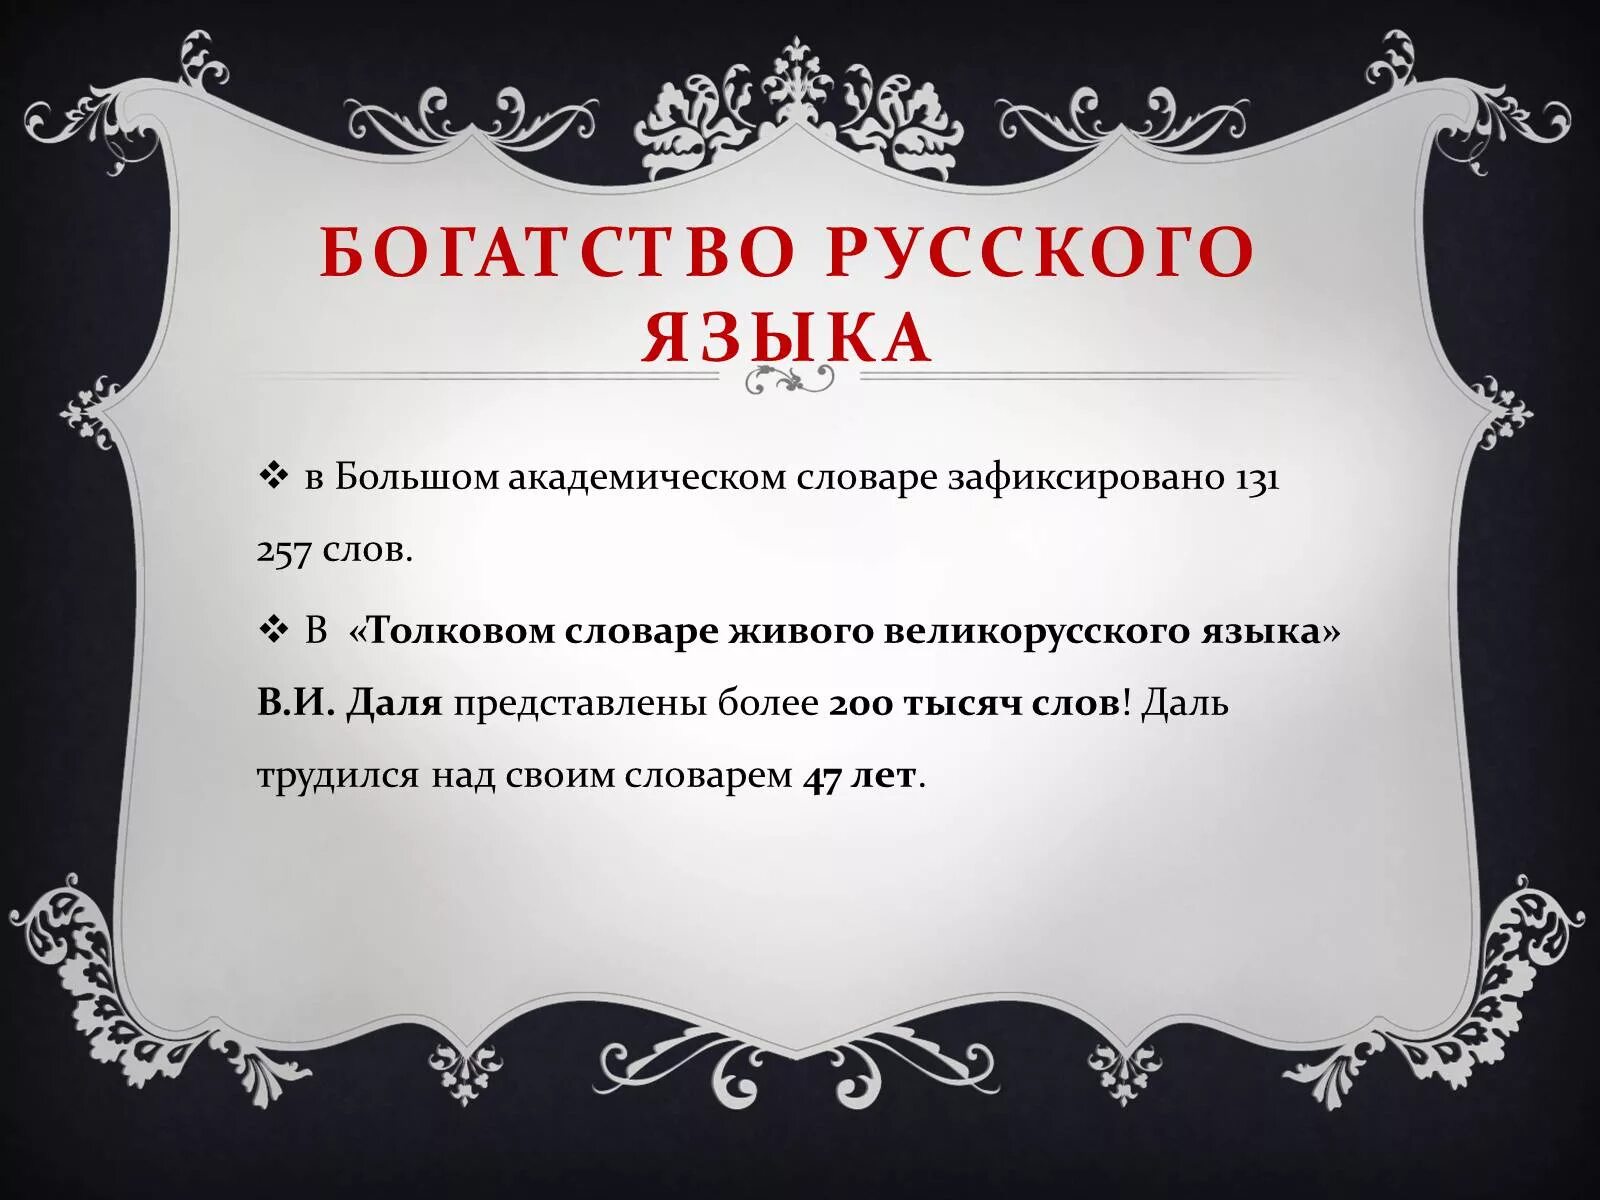 Русский язык это богатство которое представляет. Проблема добра и зла в философии.